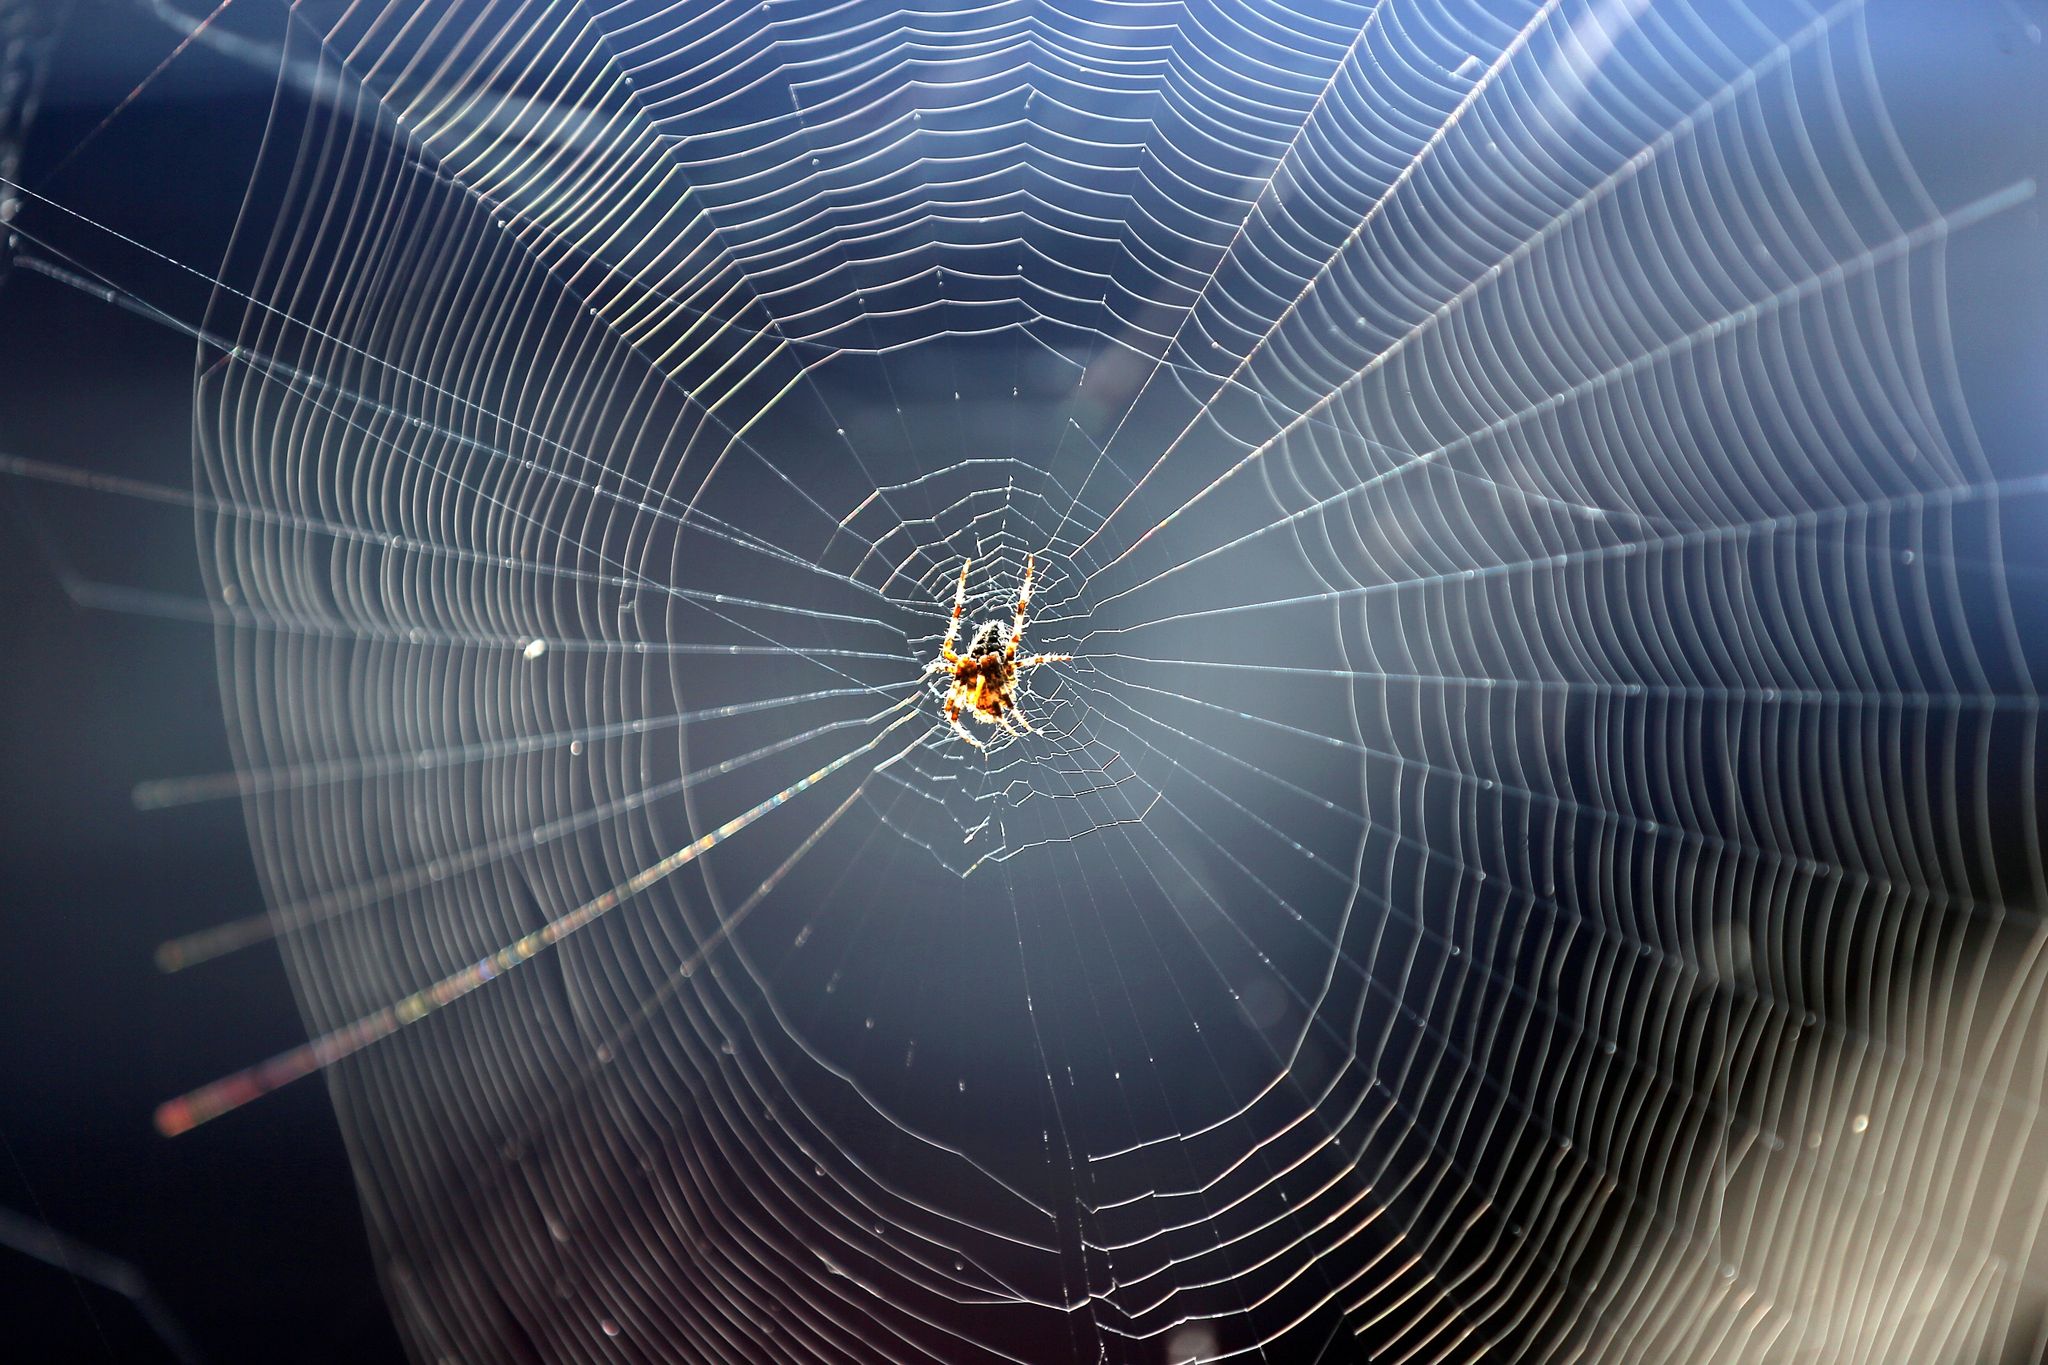 Gartenkreuzspinne gehört zu den Spinnenarten, die es nicht in die Häuser zieht.